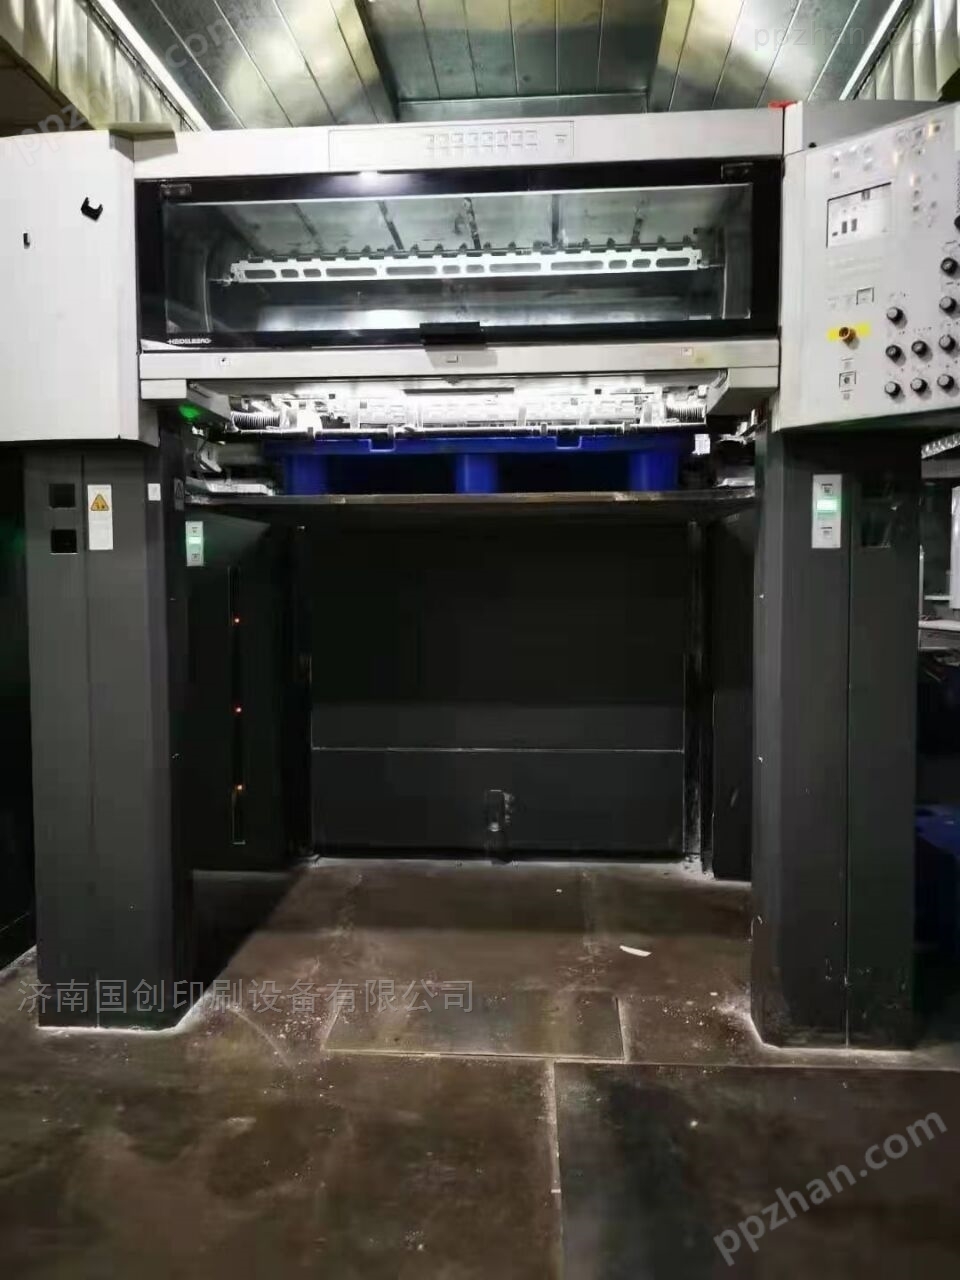 转让二手海德堡SM1020-8高配印刷机